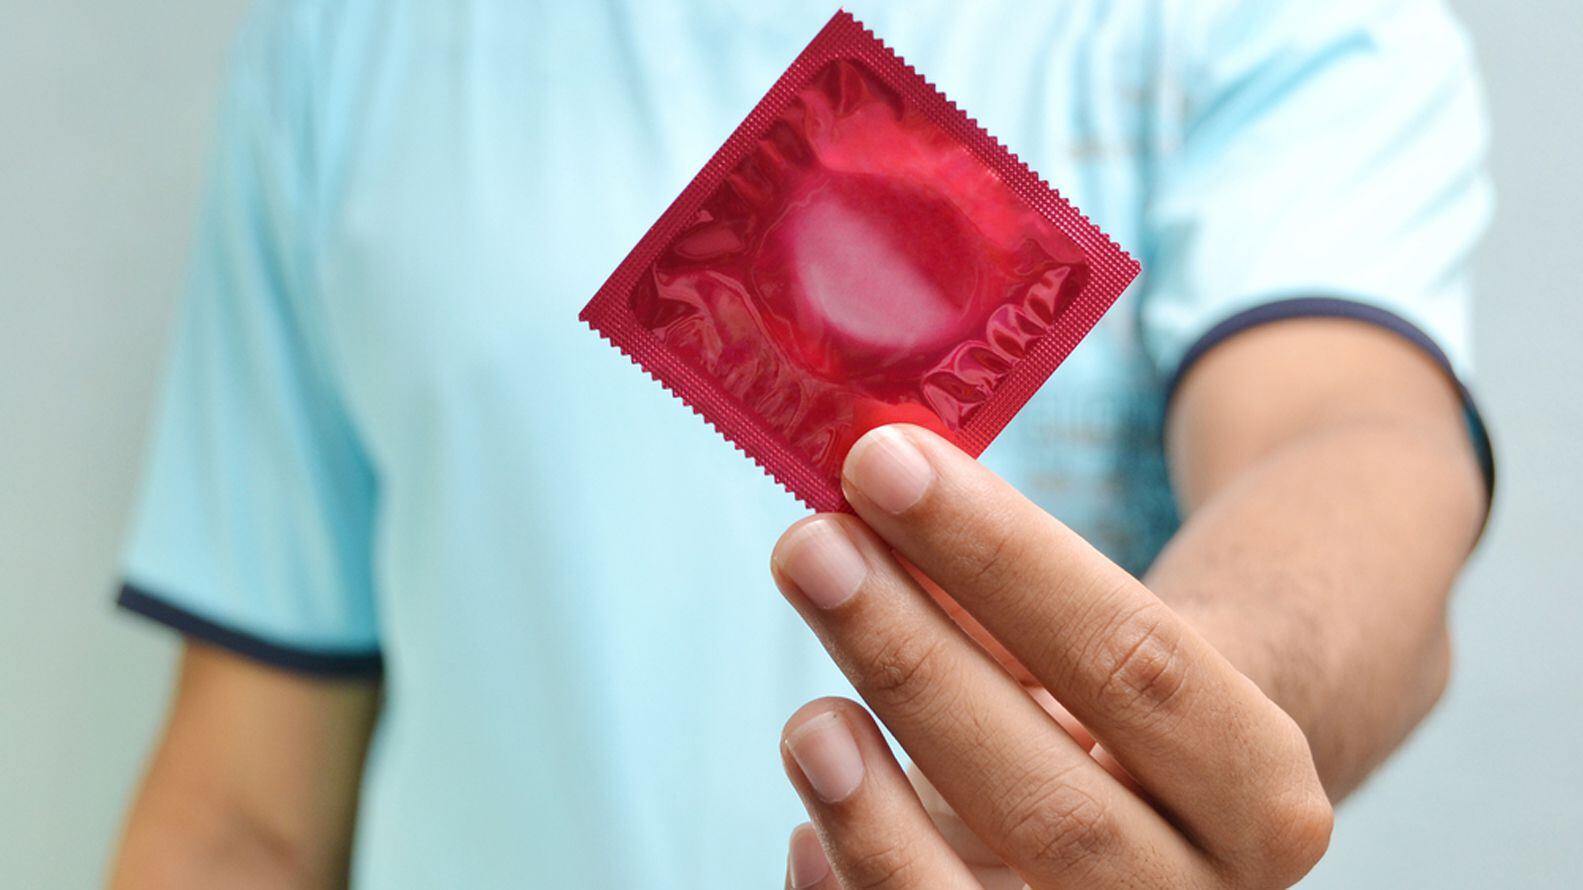 El uso del preservativo previene el contagio de enfermedades de transmisión sexual (ETS) (Shutterstock)